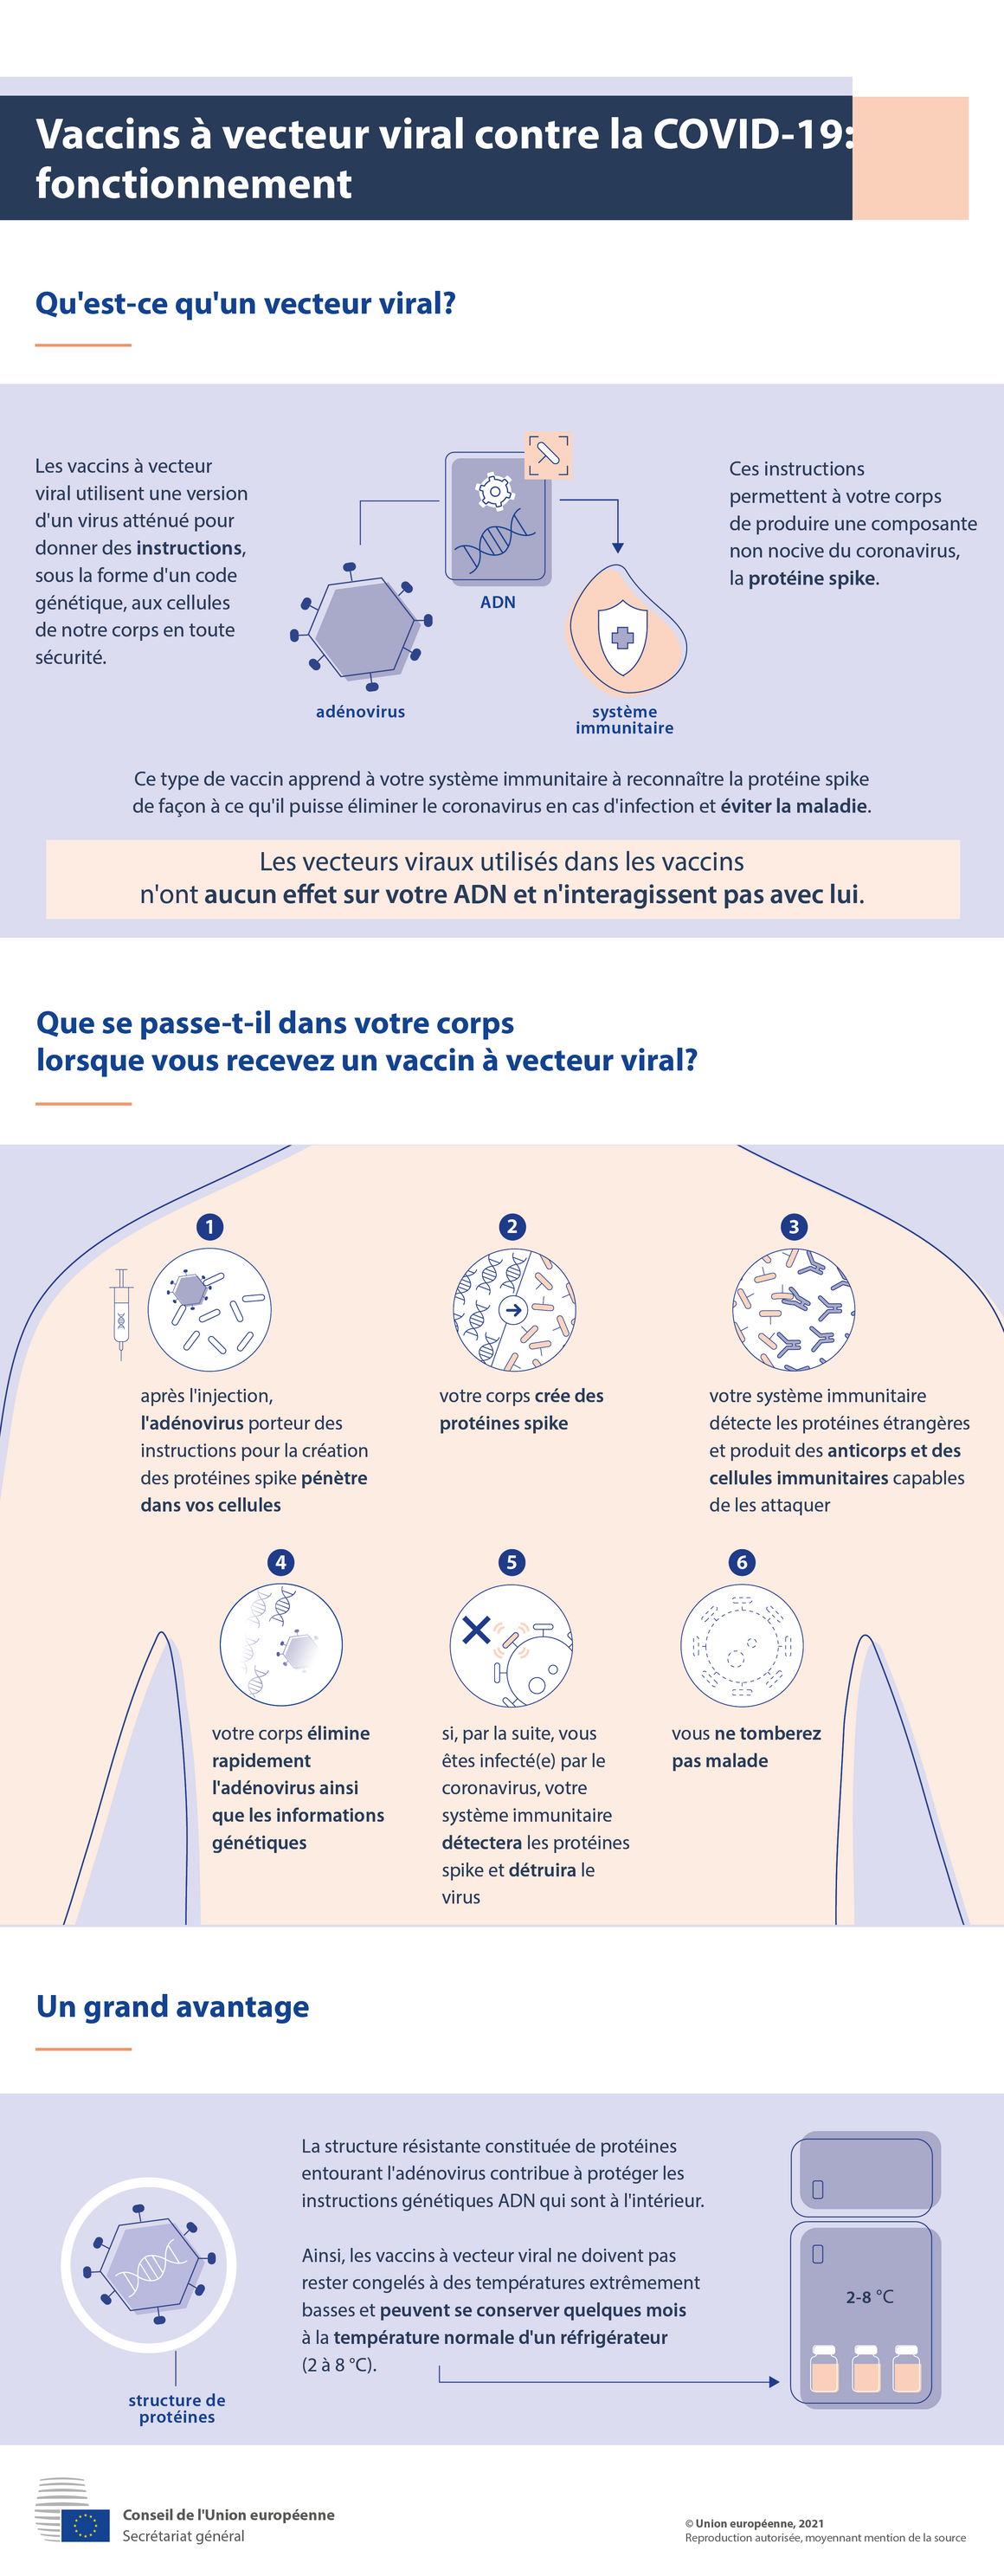 Infographie - Les vaccins à vecteur viral contre la COVID-19: comment fonctionnent-ils?